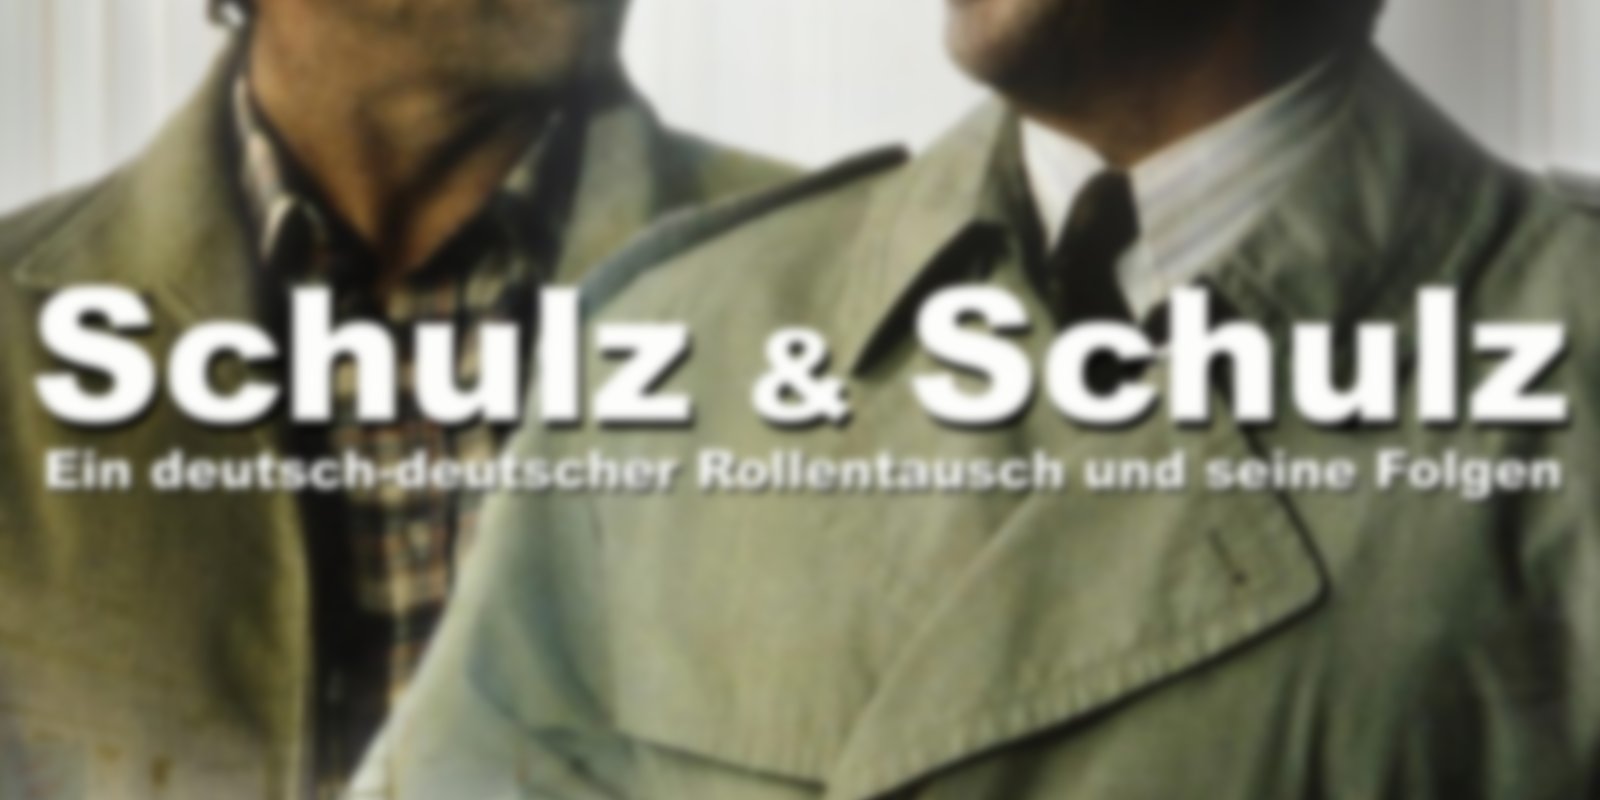 Schulz & Schulz